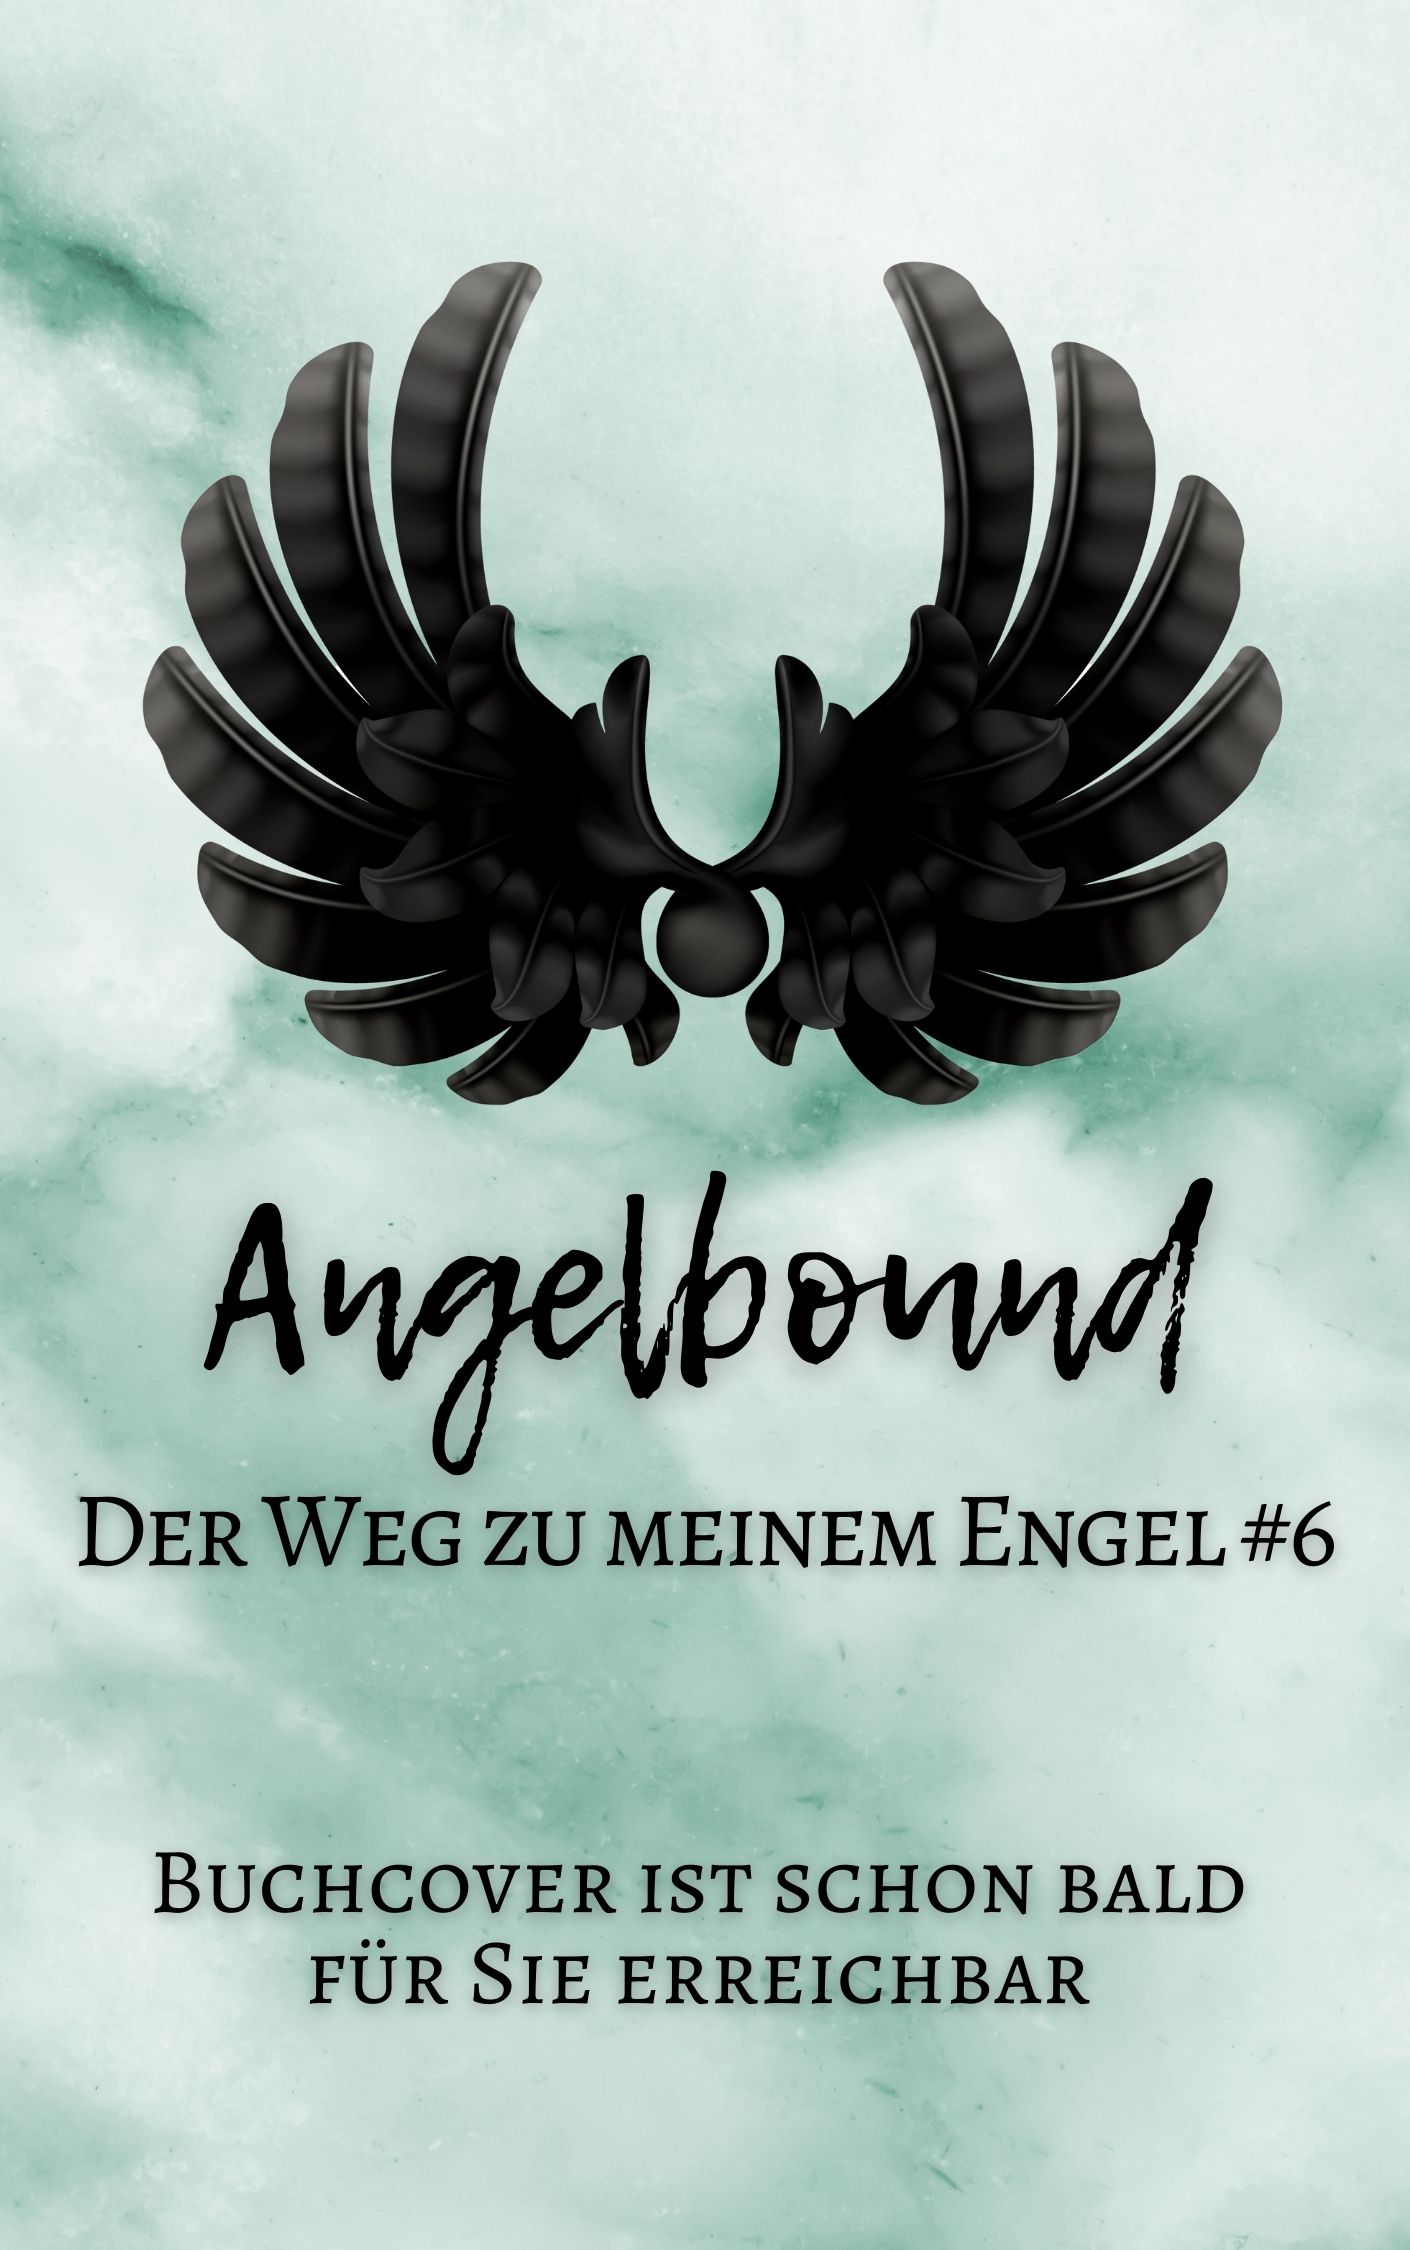 6 Angelbound